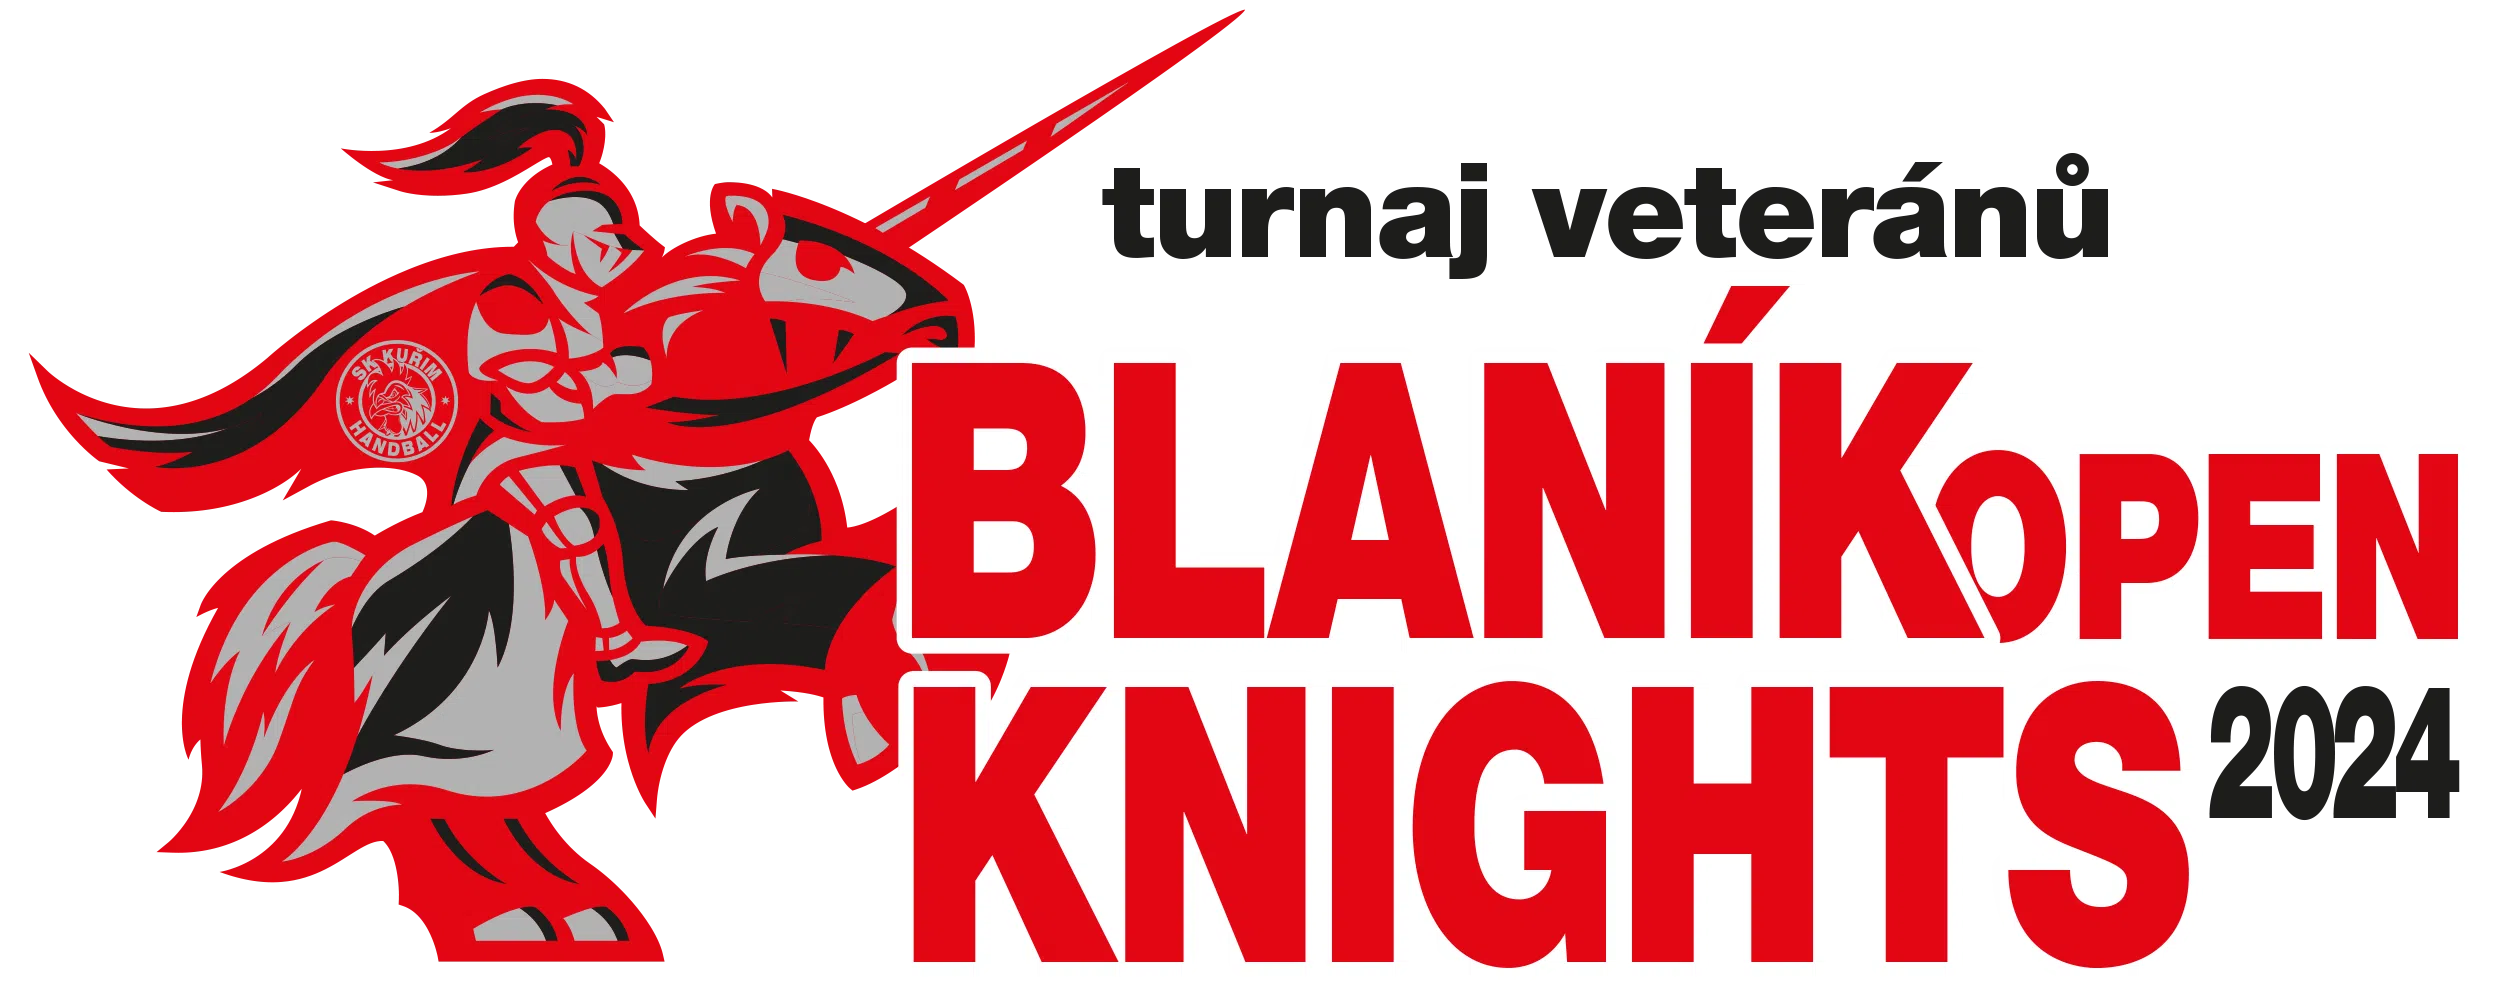 Blanik_Knights_open-2024-logo.png